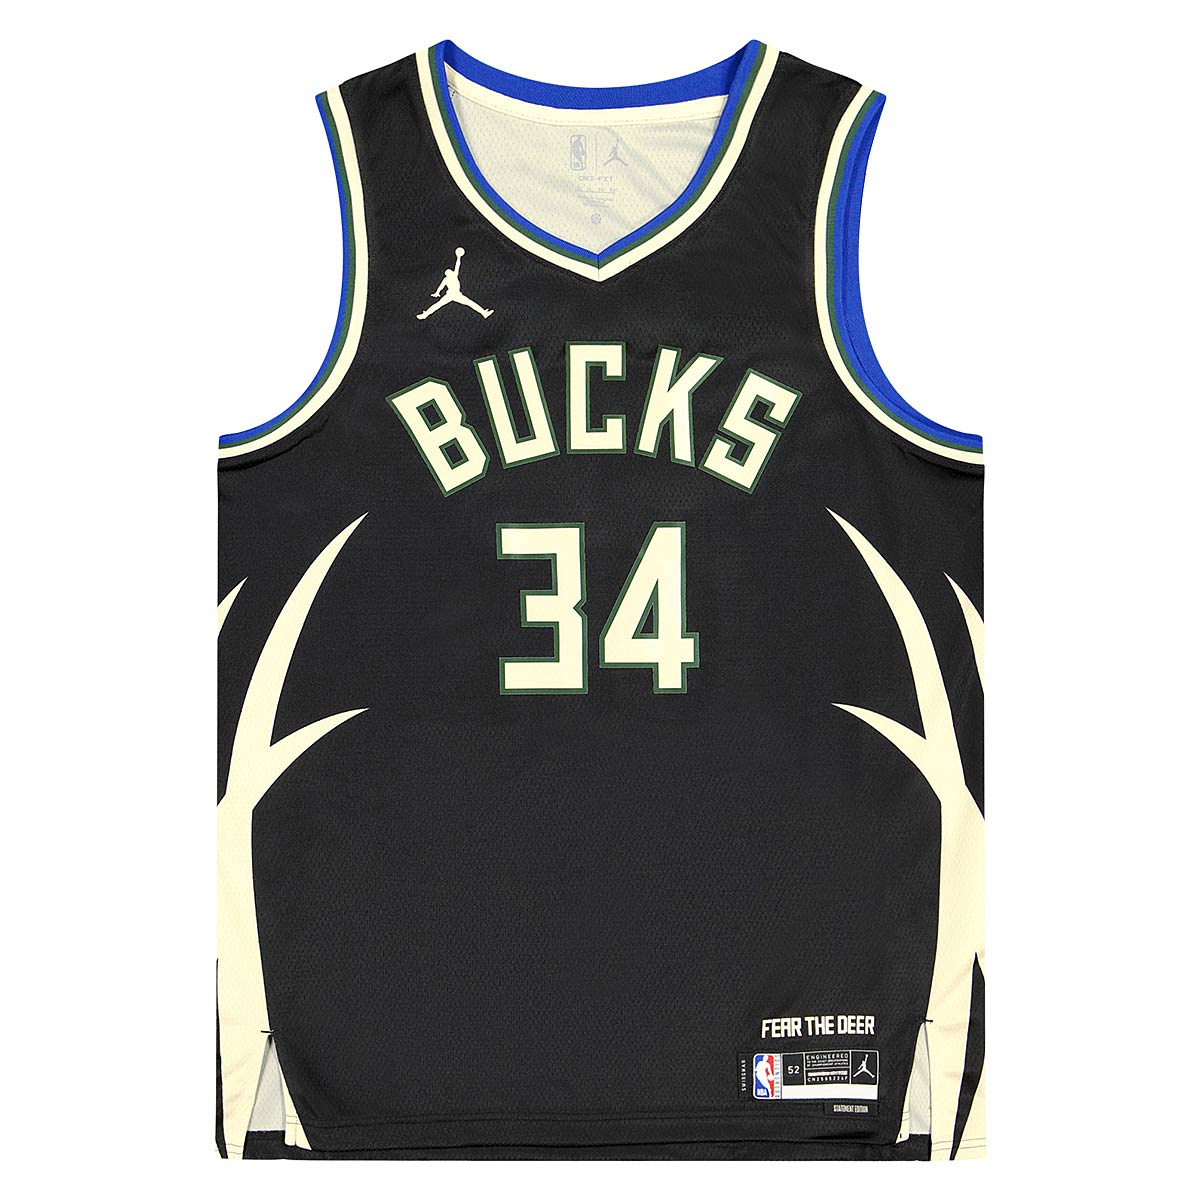 Nike NBA Milwaukee Bucks Dri-fit Statement Swingman Jersey Giannis Antetokounmpo, Schwarz/antetokounmpo G XL